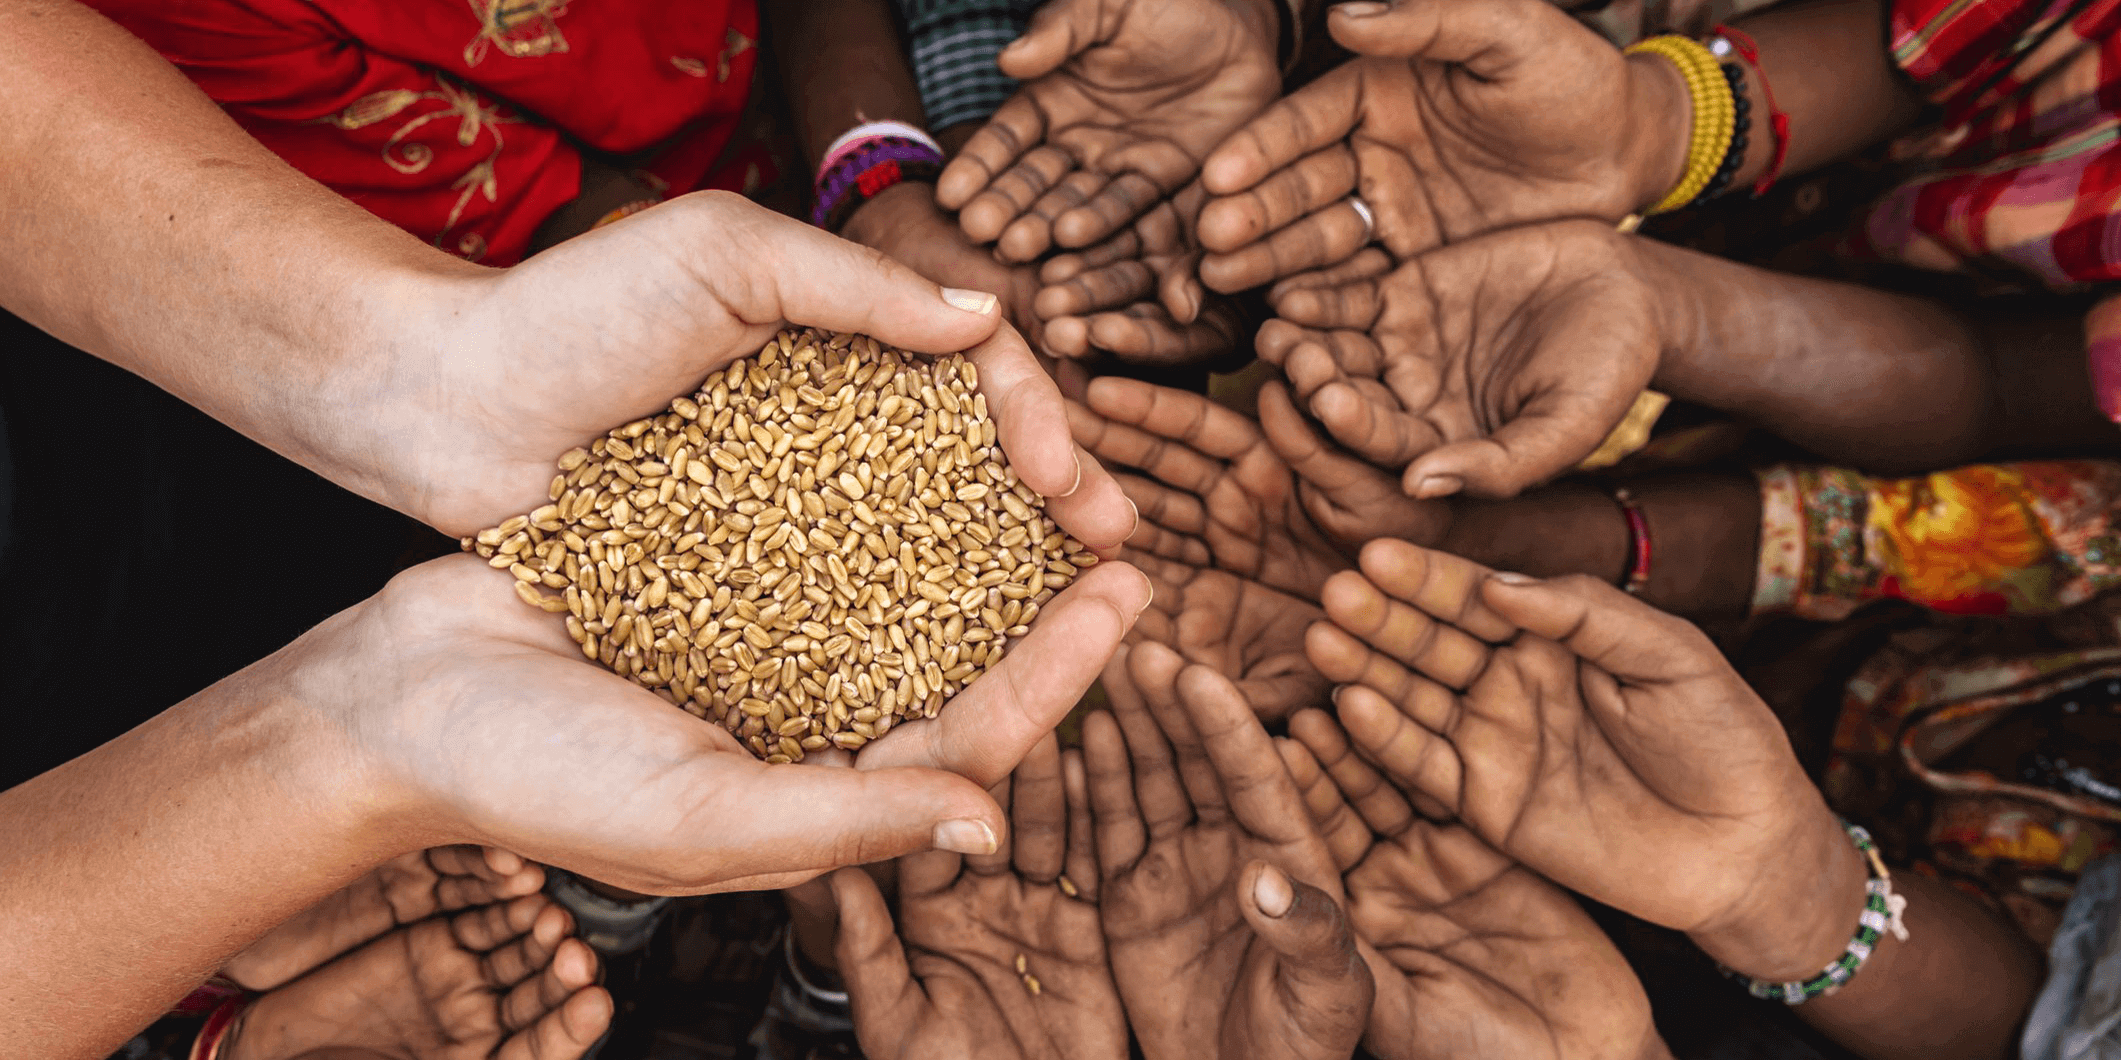 The Global Fund: Criza alimentară va duce la proliferarea unor boli ce vor face ''milioane de victime''